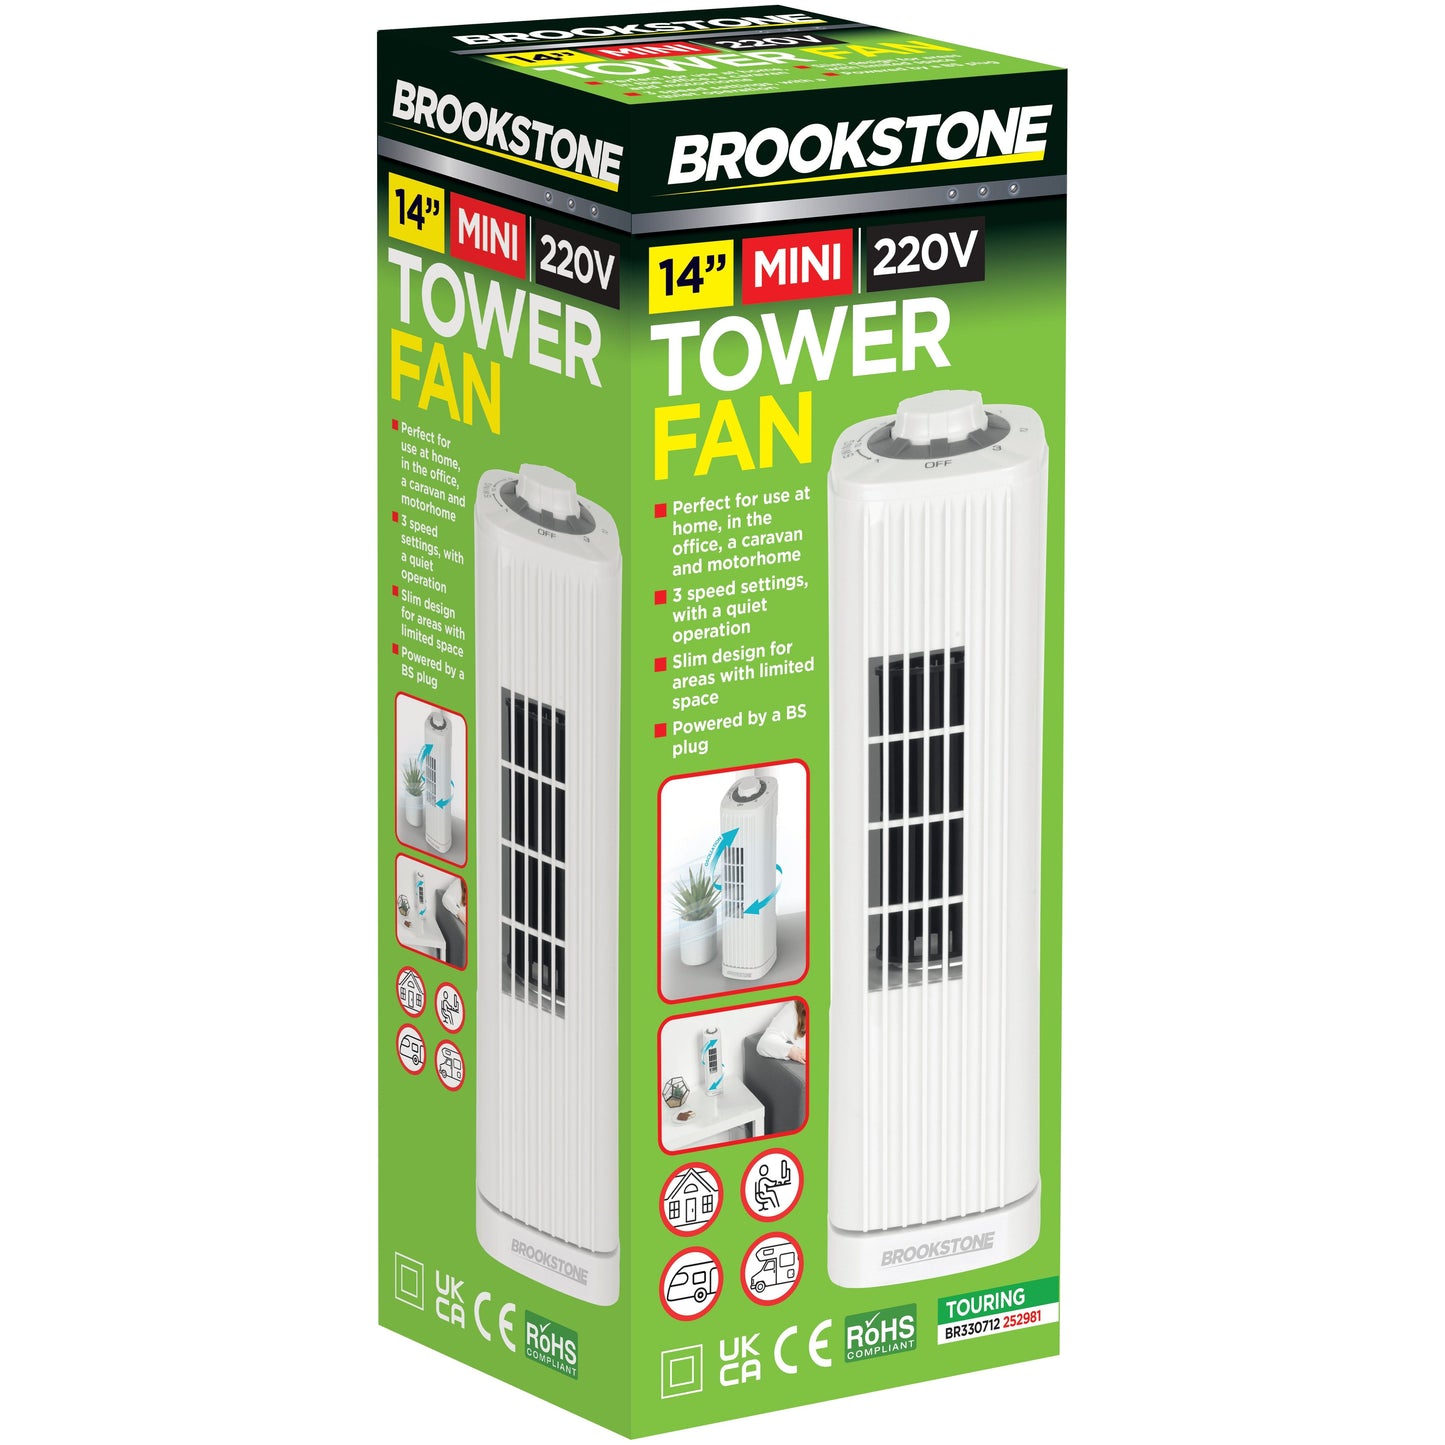 Brookstone 14" Tower Fan